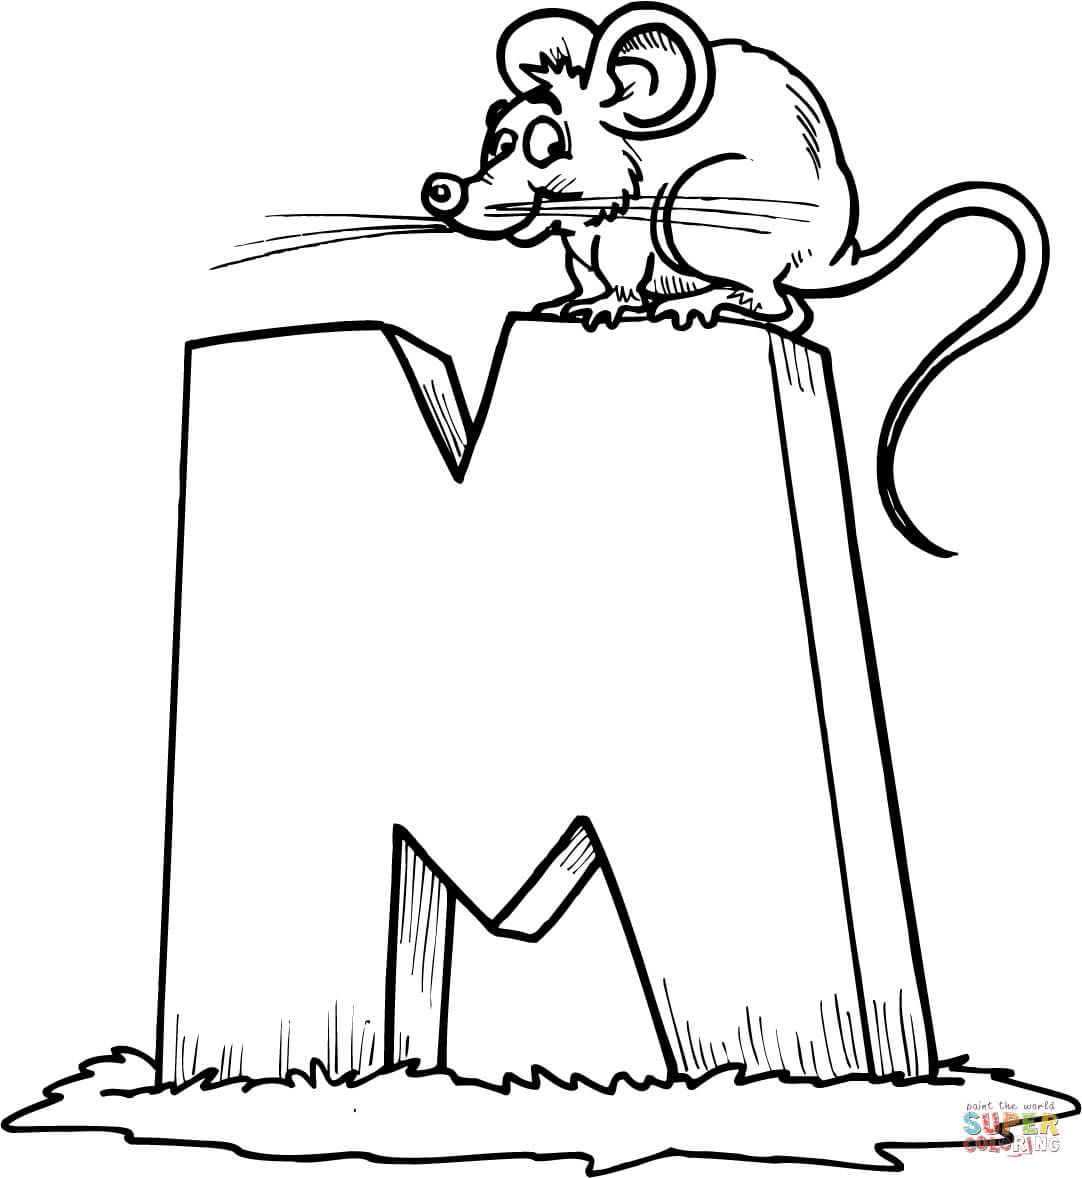 Буква М — это мышь из буквы М.